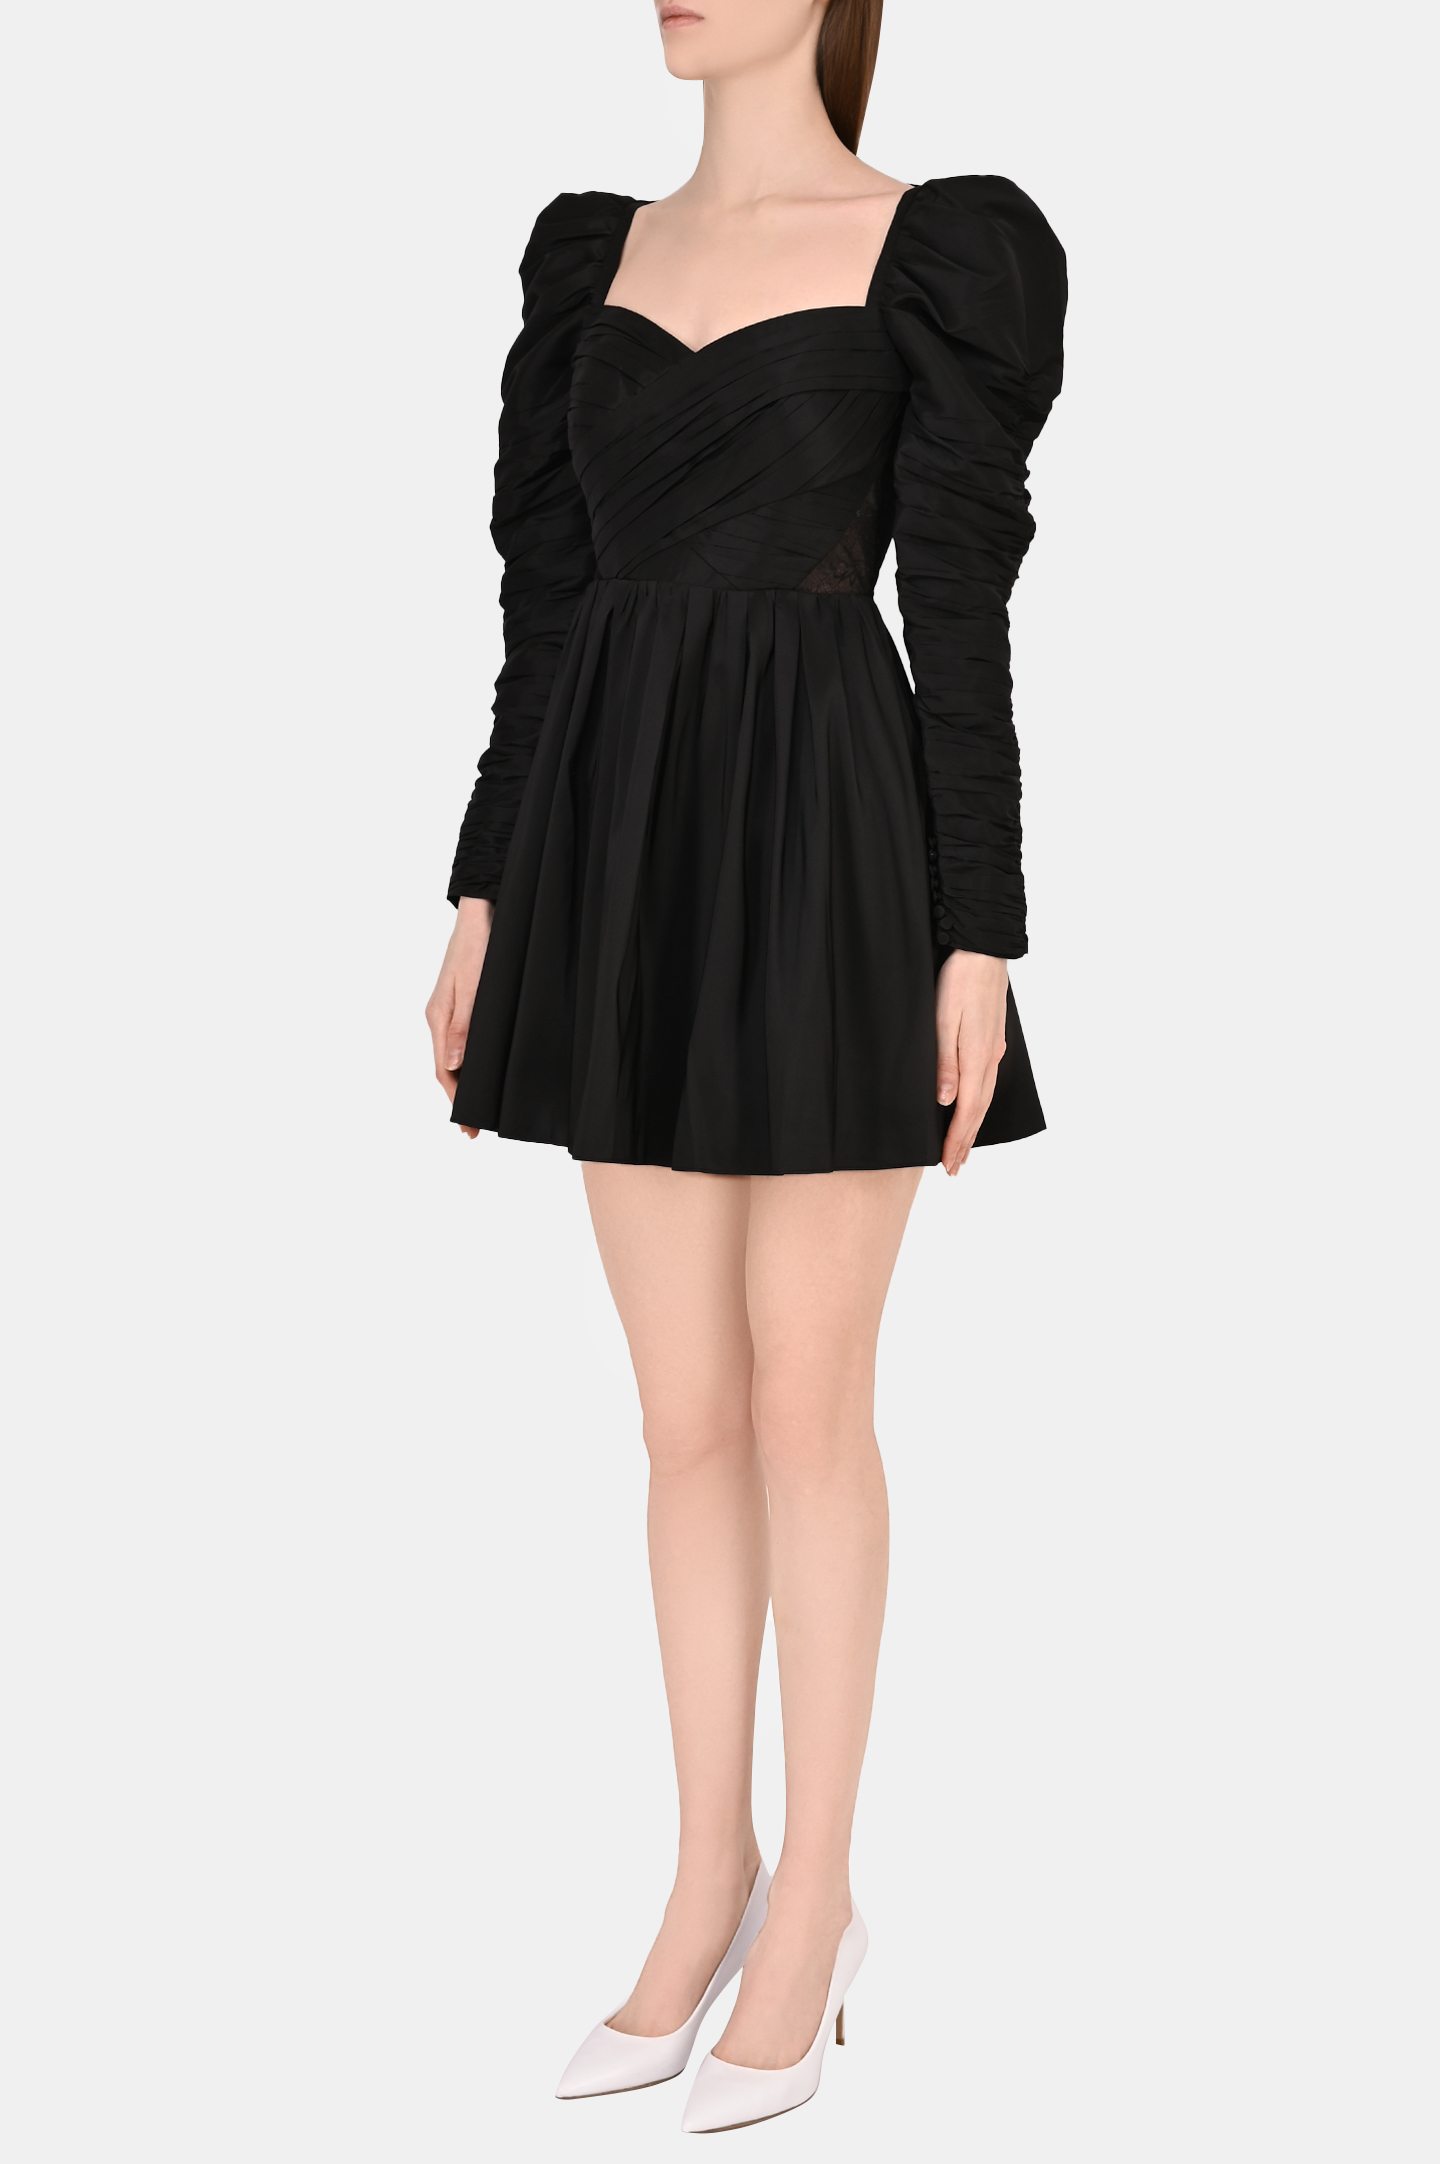 Платье SELF PORTRAIT RS22-067, цвет: Черный, Женский